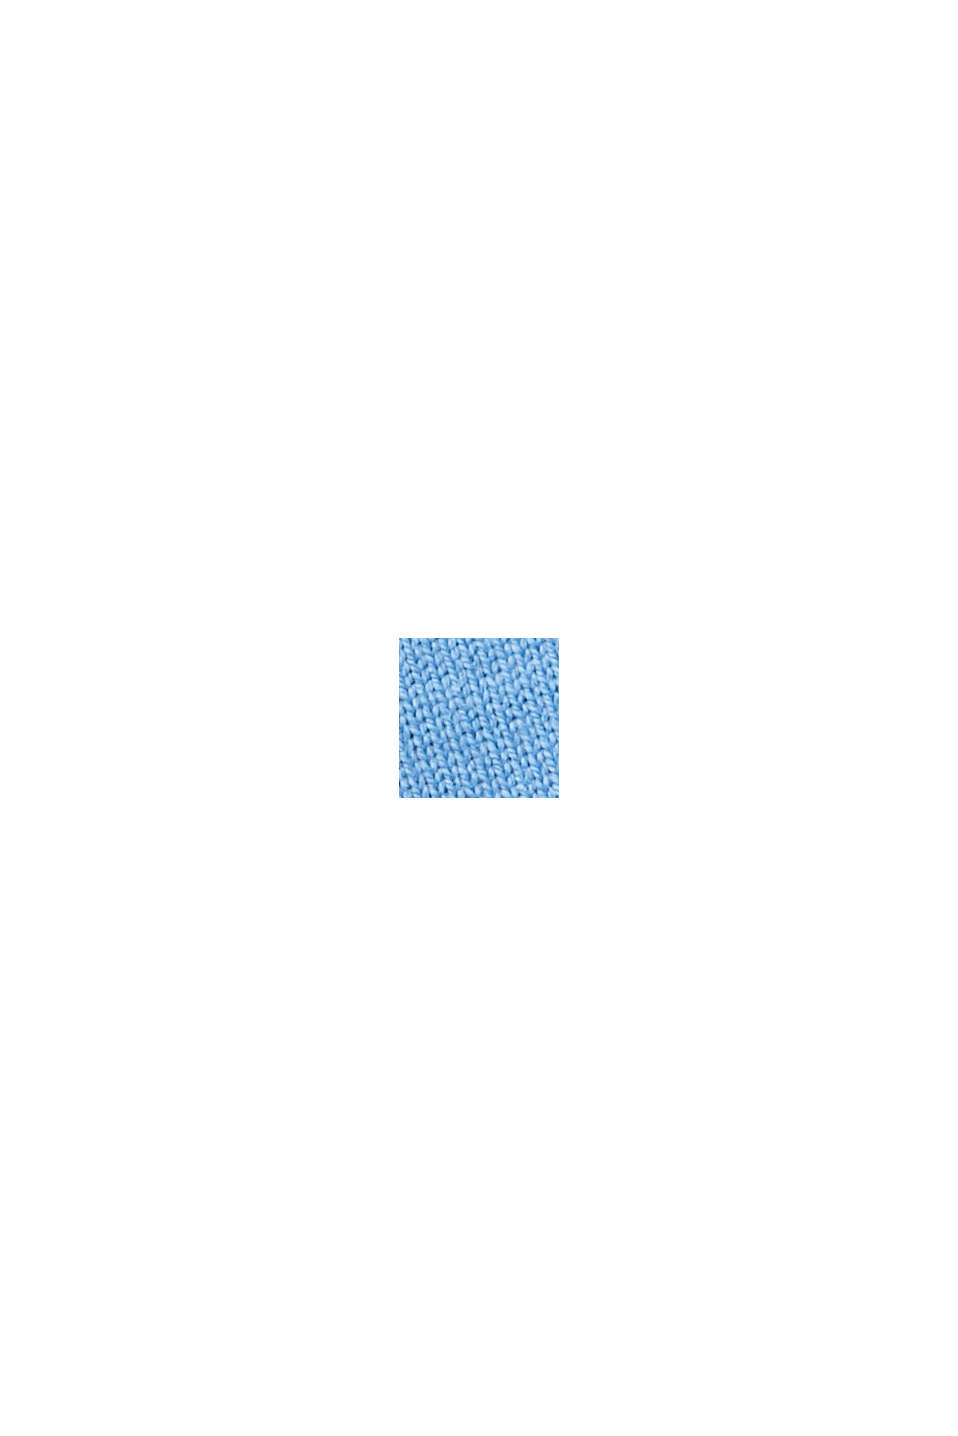 條紋橄欖球POLO衫, 淺藍色, swatch